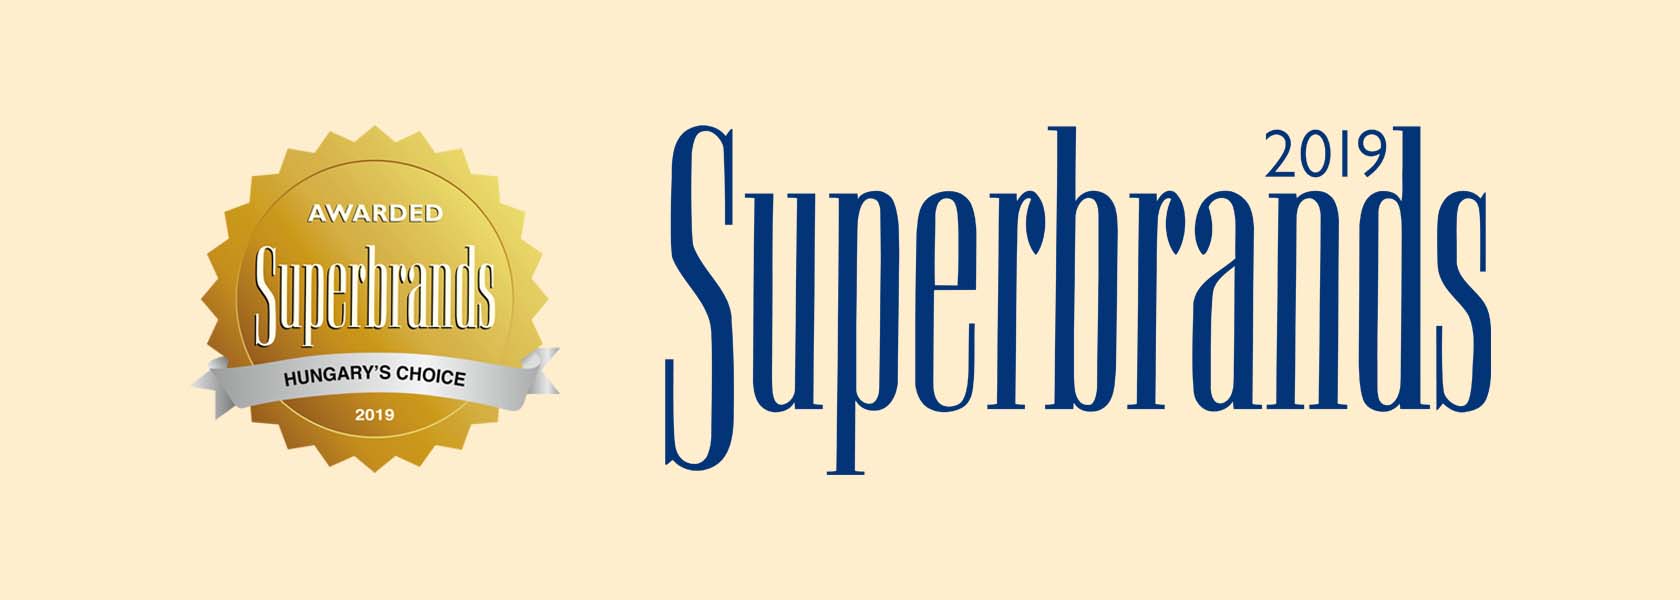 Marlenka Superbrands